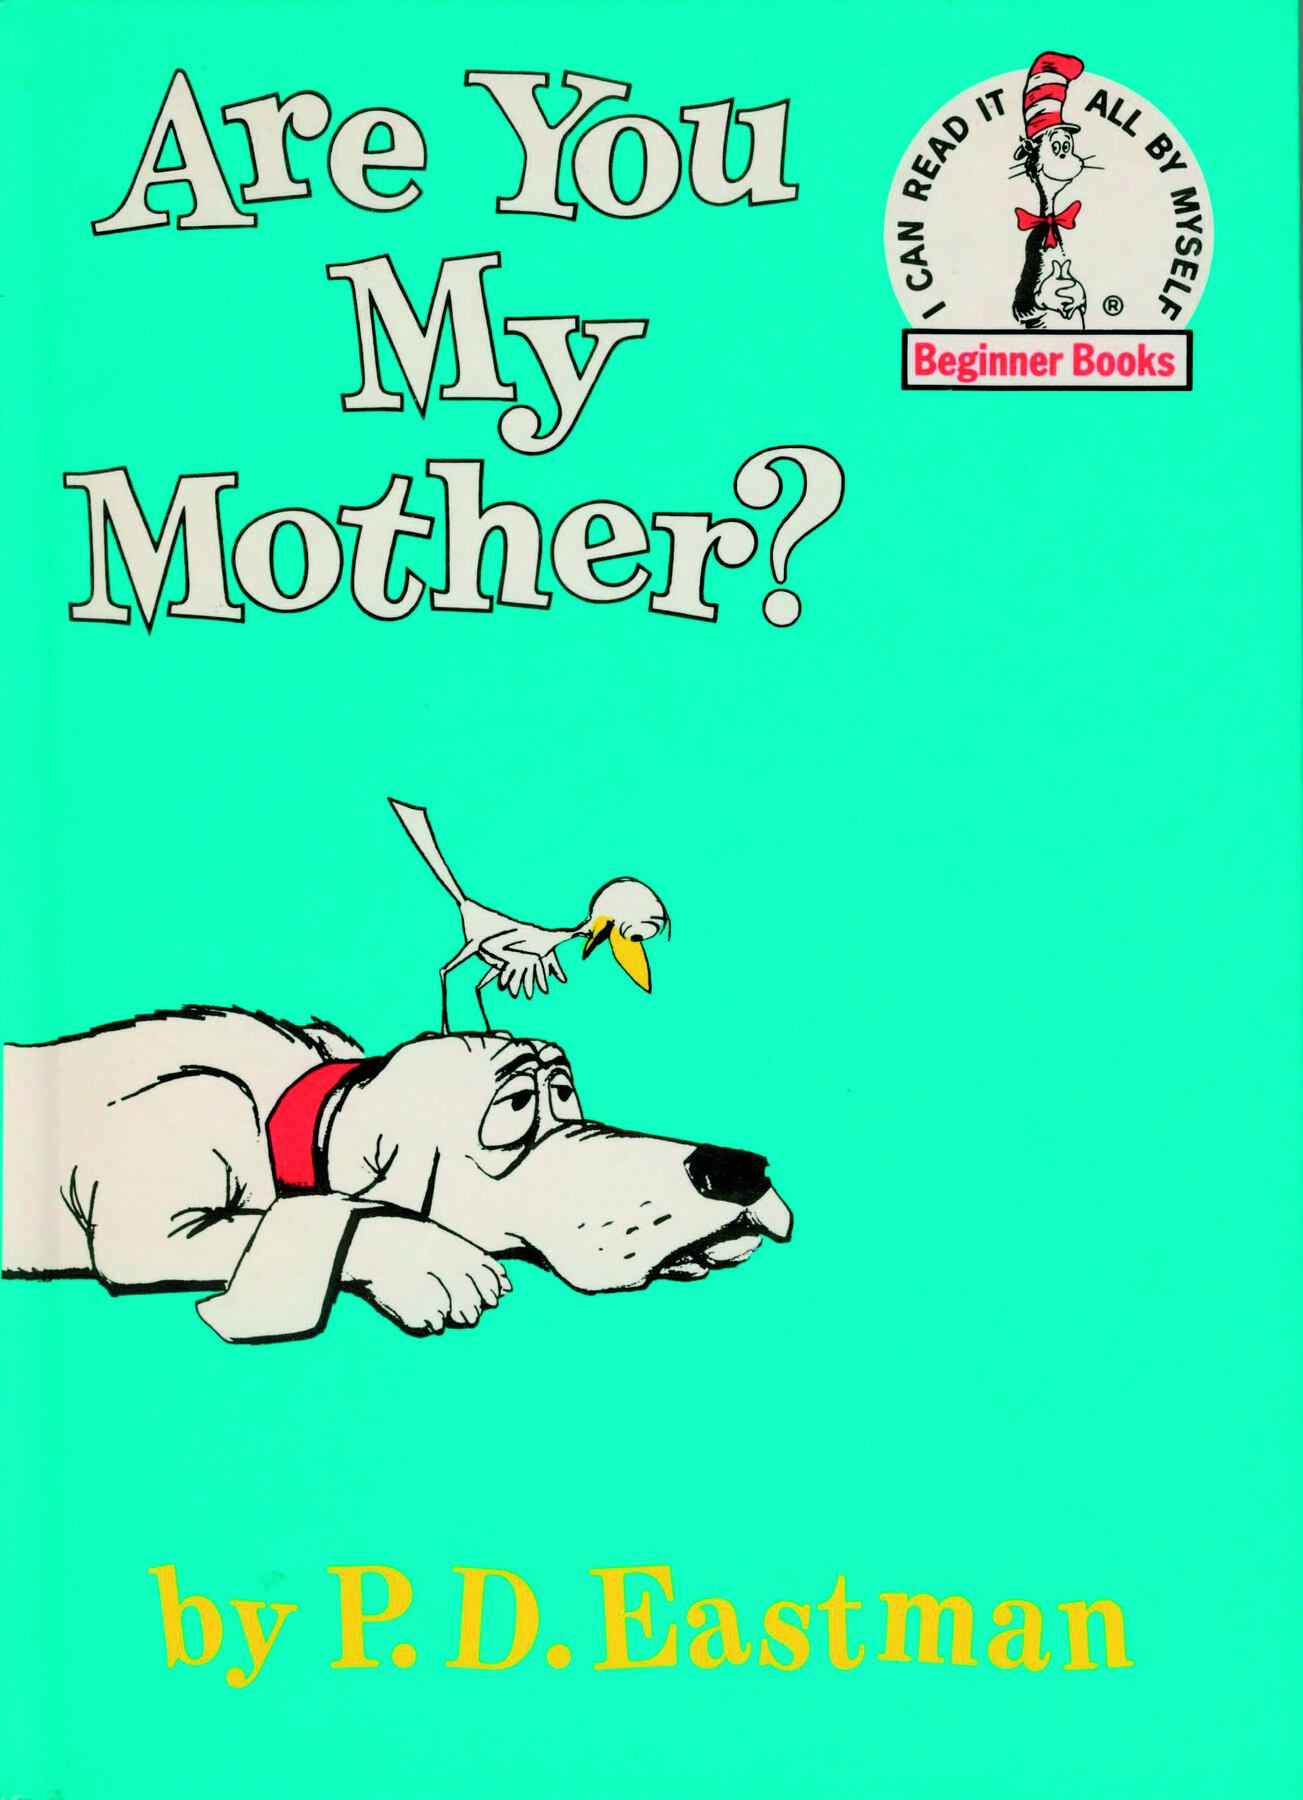 Capa de livro. Na parte superior, lê-se o título: ARE YOU MY MOTHER? Abaixo há uma ilustração de um cachorro branco com coleira vermelha. Ele está deitado no chão, de barriga para baixo. Acima de sua cabeça há uma ave magra de penas brancas e bico amarelo.